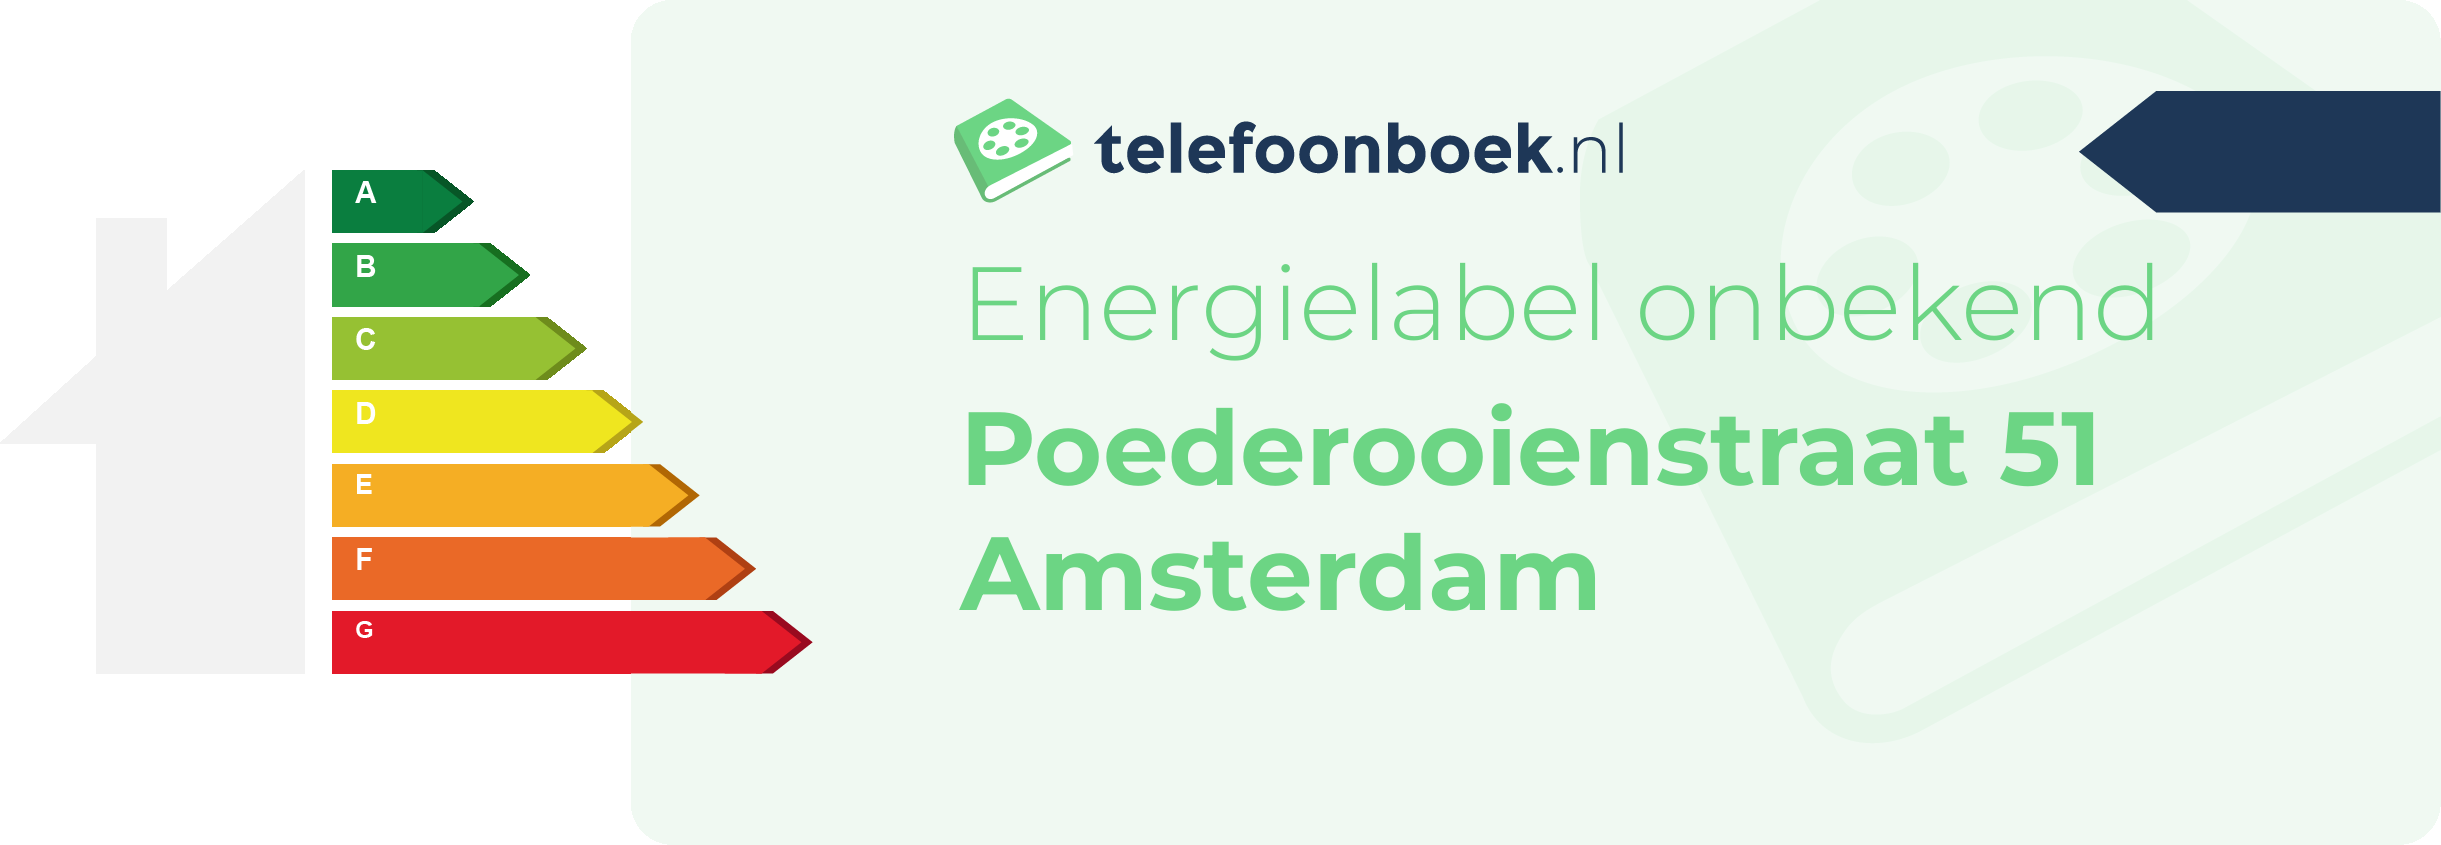 Energielabel Poederooienstraat 51 Amsterdam